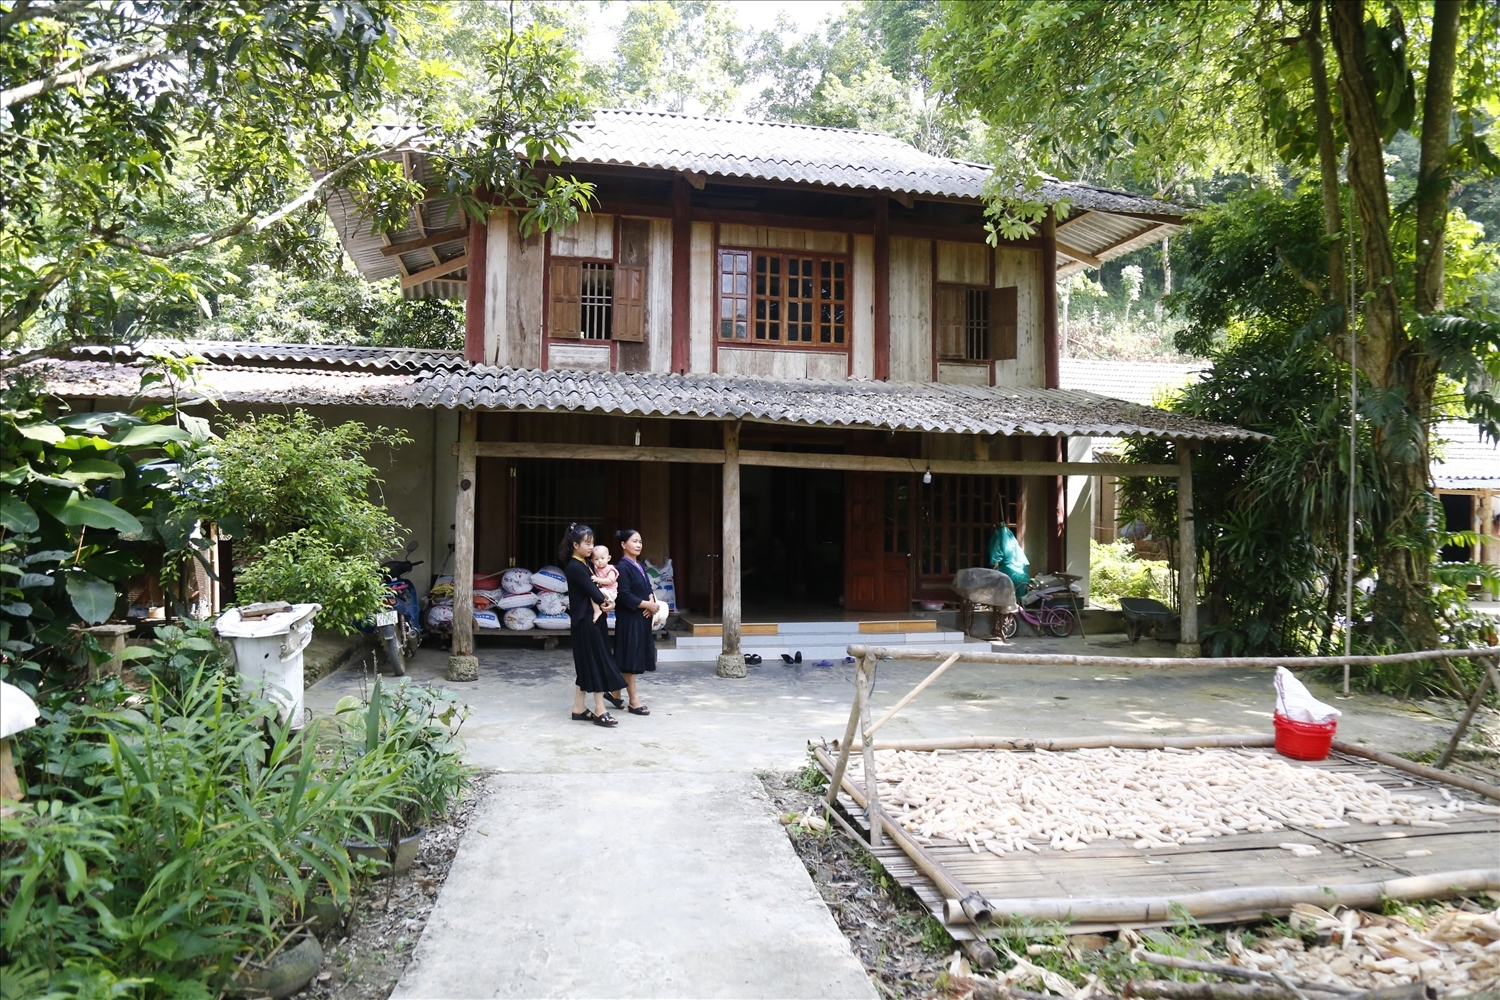 Nếp nhà truyền thống của người Tống ở thôn Đồng Cướm (Tuyên Quang)